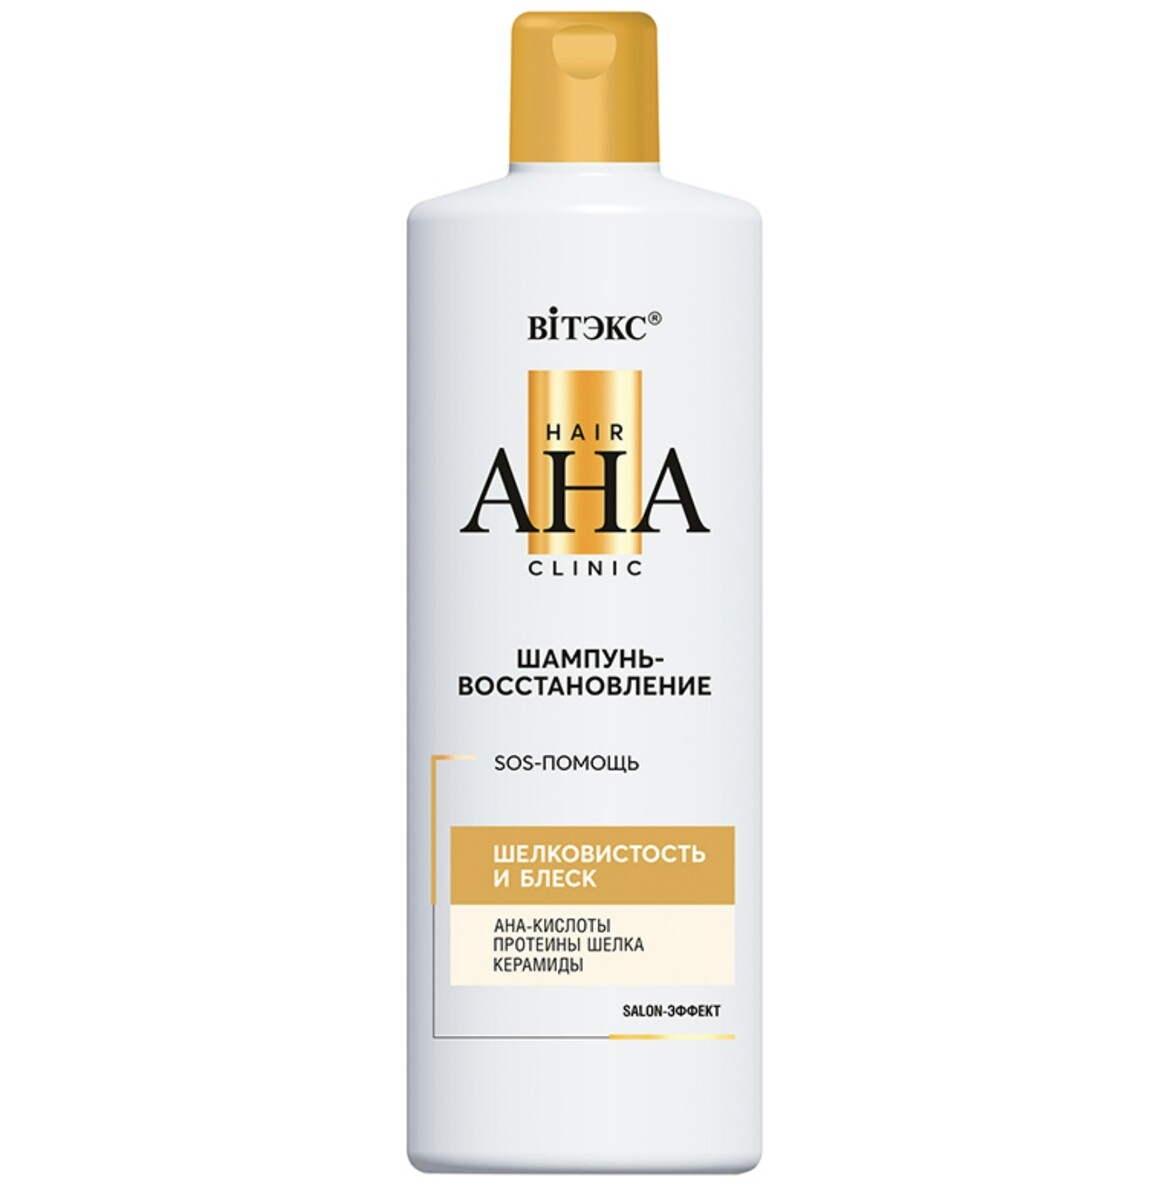 Hair aha clinic шампунь-восстановление для волос шелковистость и блеск 450мл шампунь для волос восстанавливающий вербена и грейпфрут 250 мл